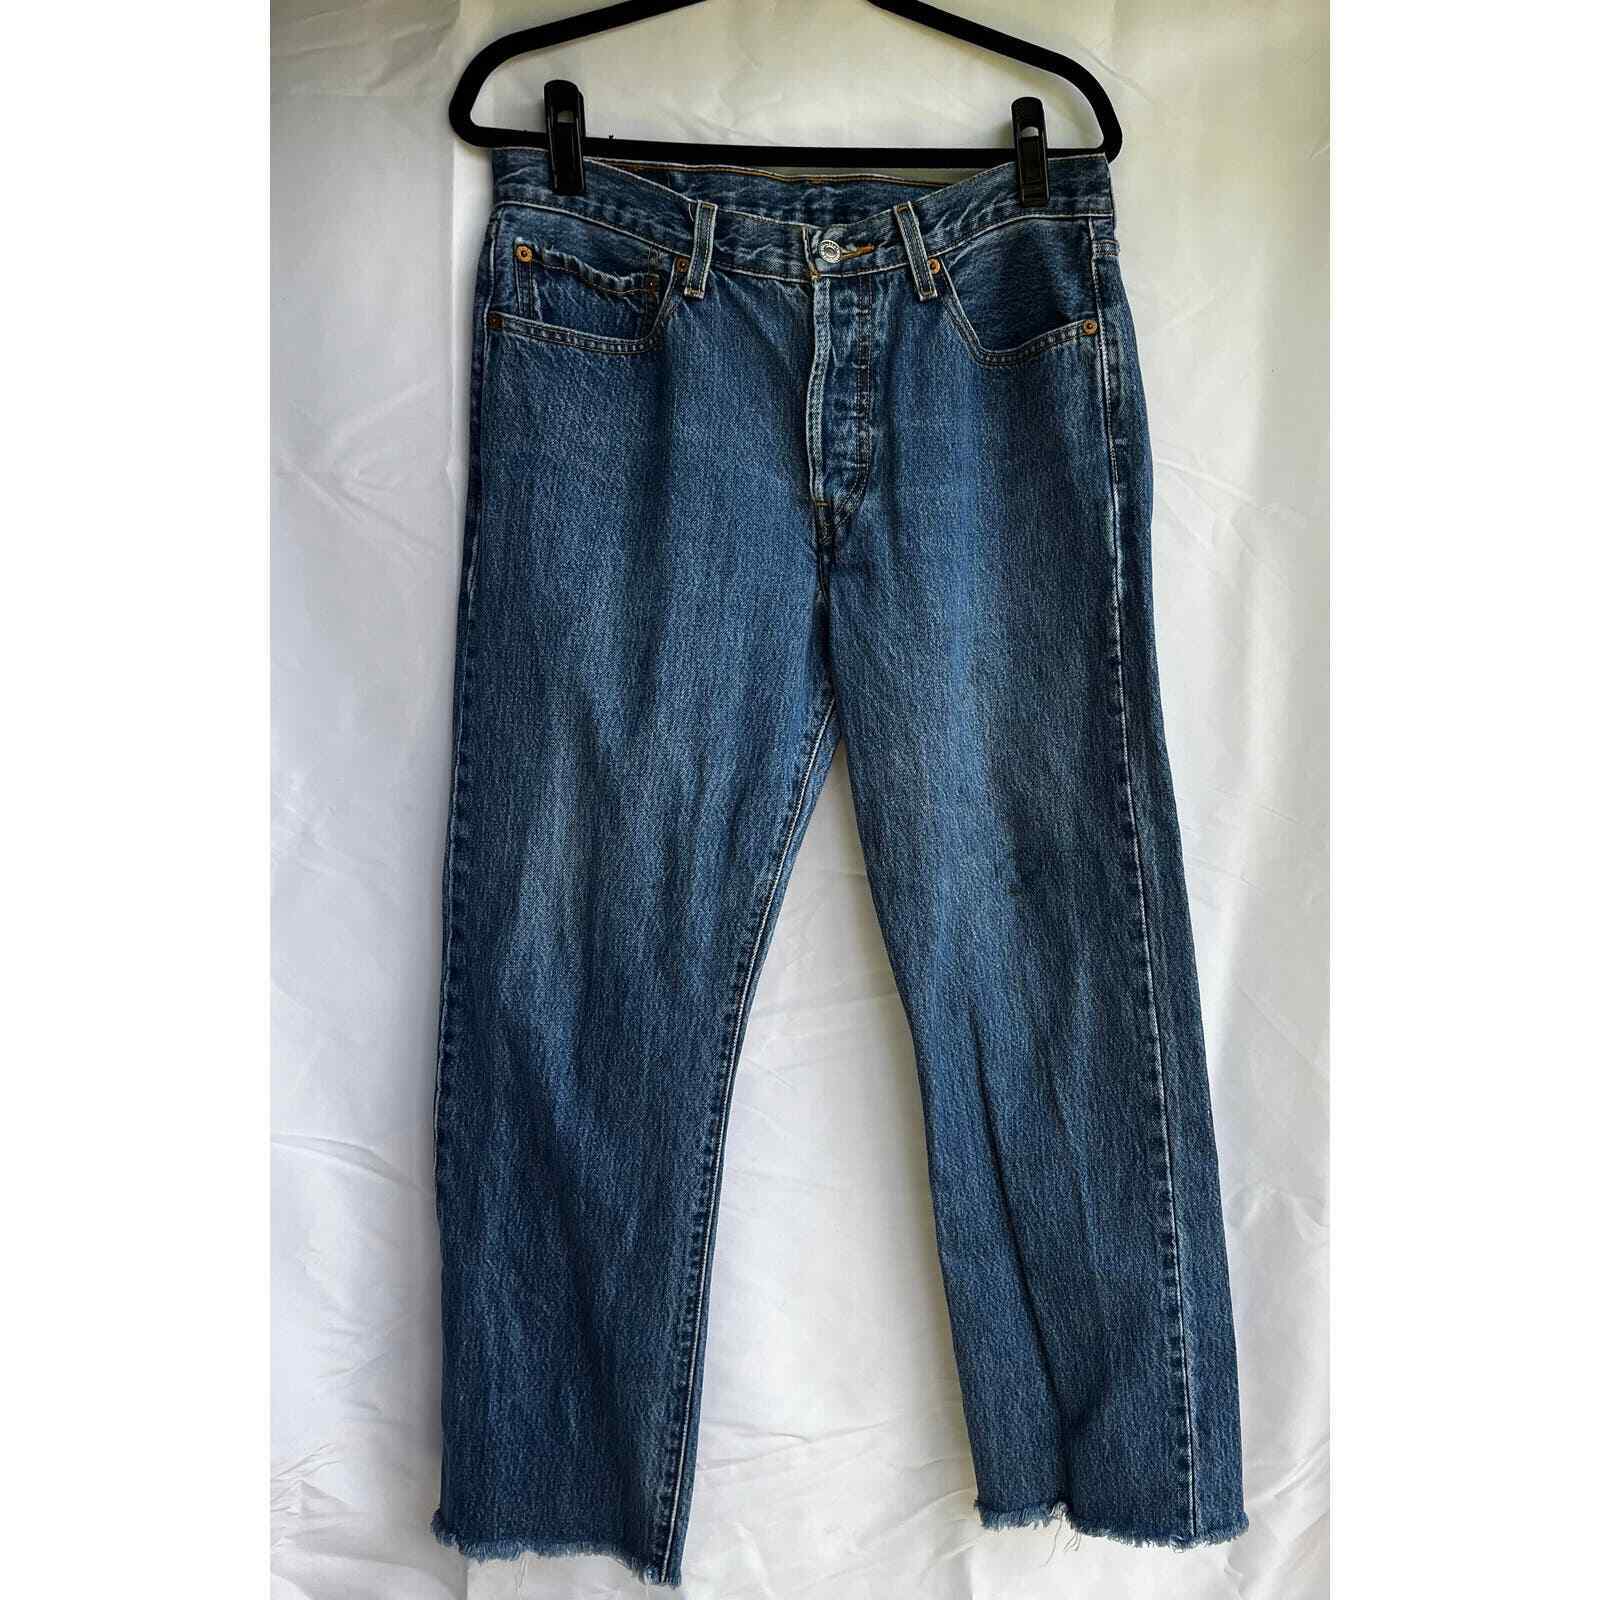 Vintage Levi's 501 Jeans Size 33, boot cut jeans - image 2